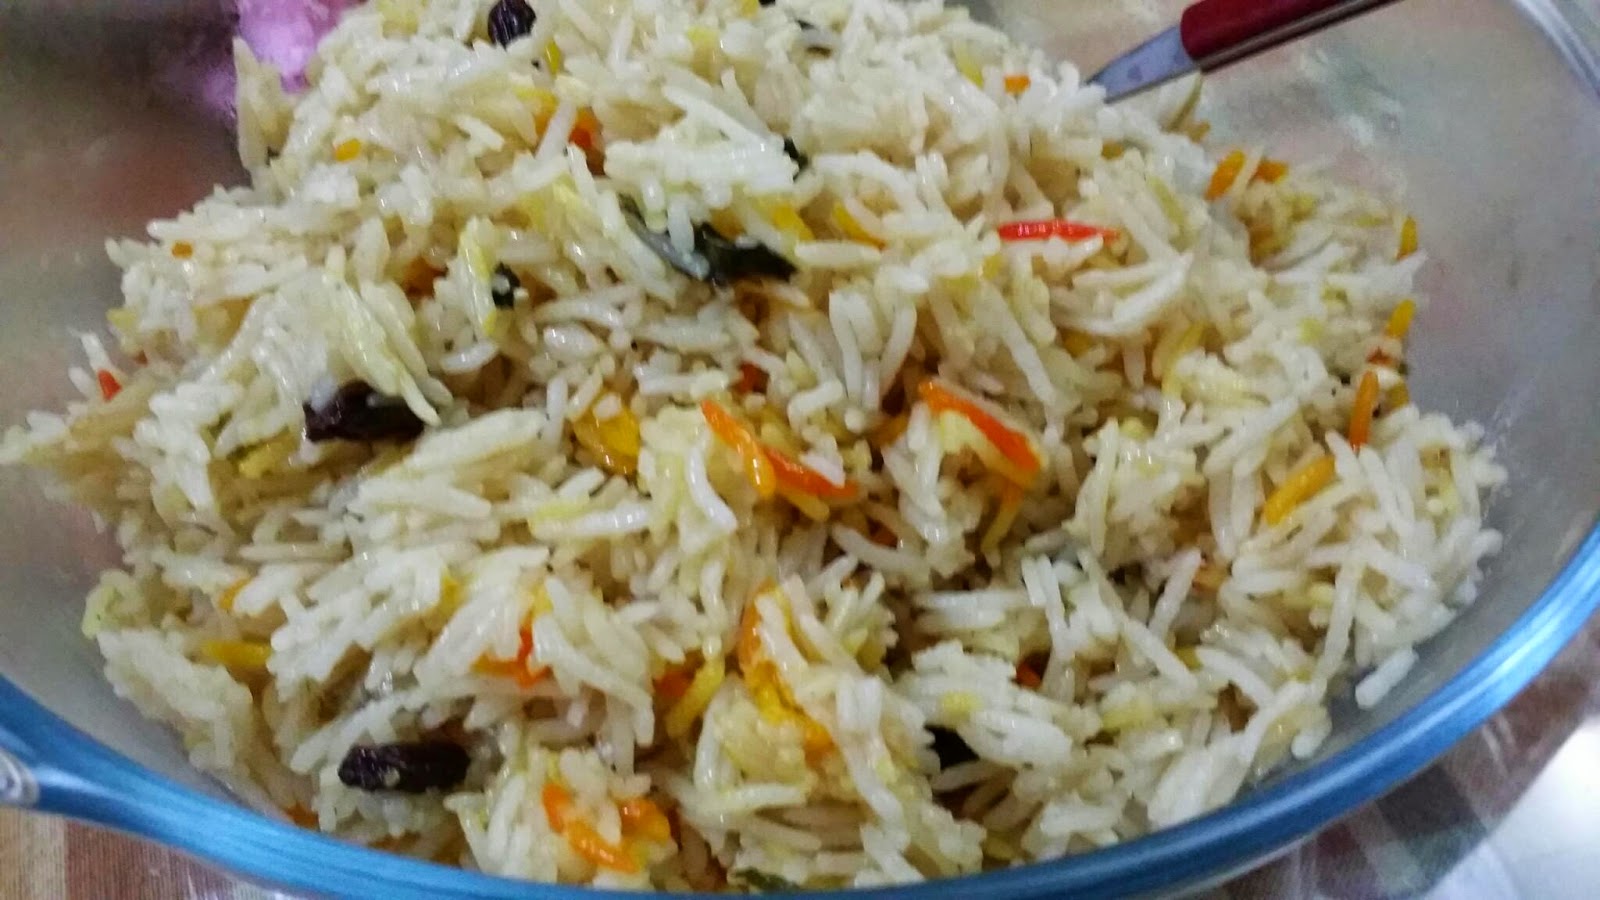 ZULFAZA LOVES COOKING: Nasi briyani johor